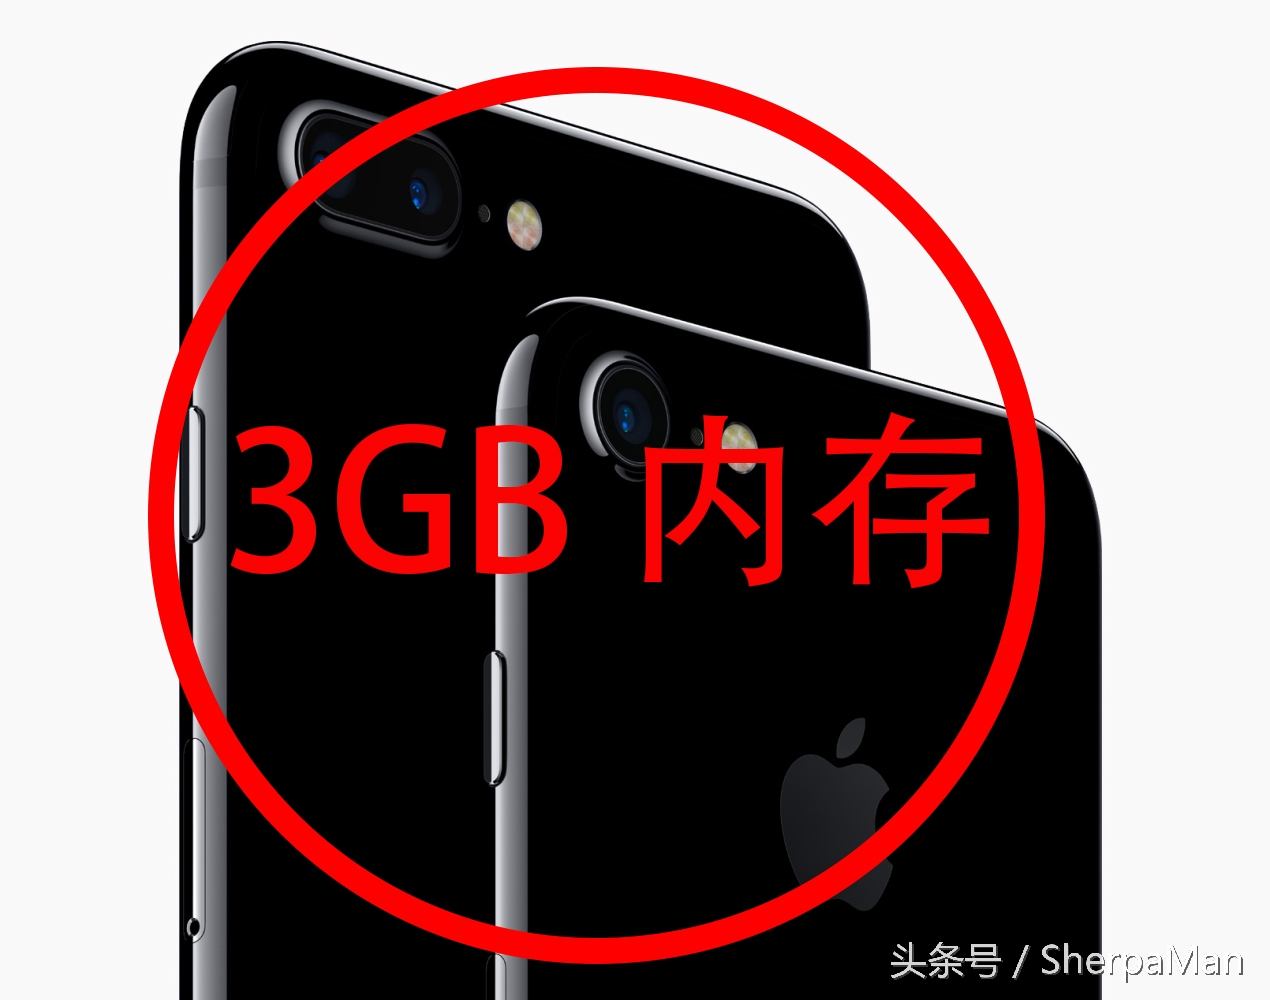 3GB运行内存明确！iPhone 7 / 7 Plus中国发行现身！